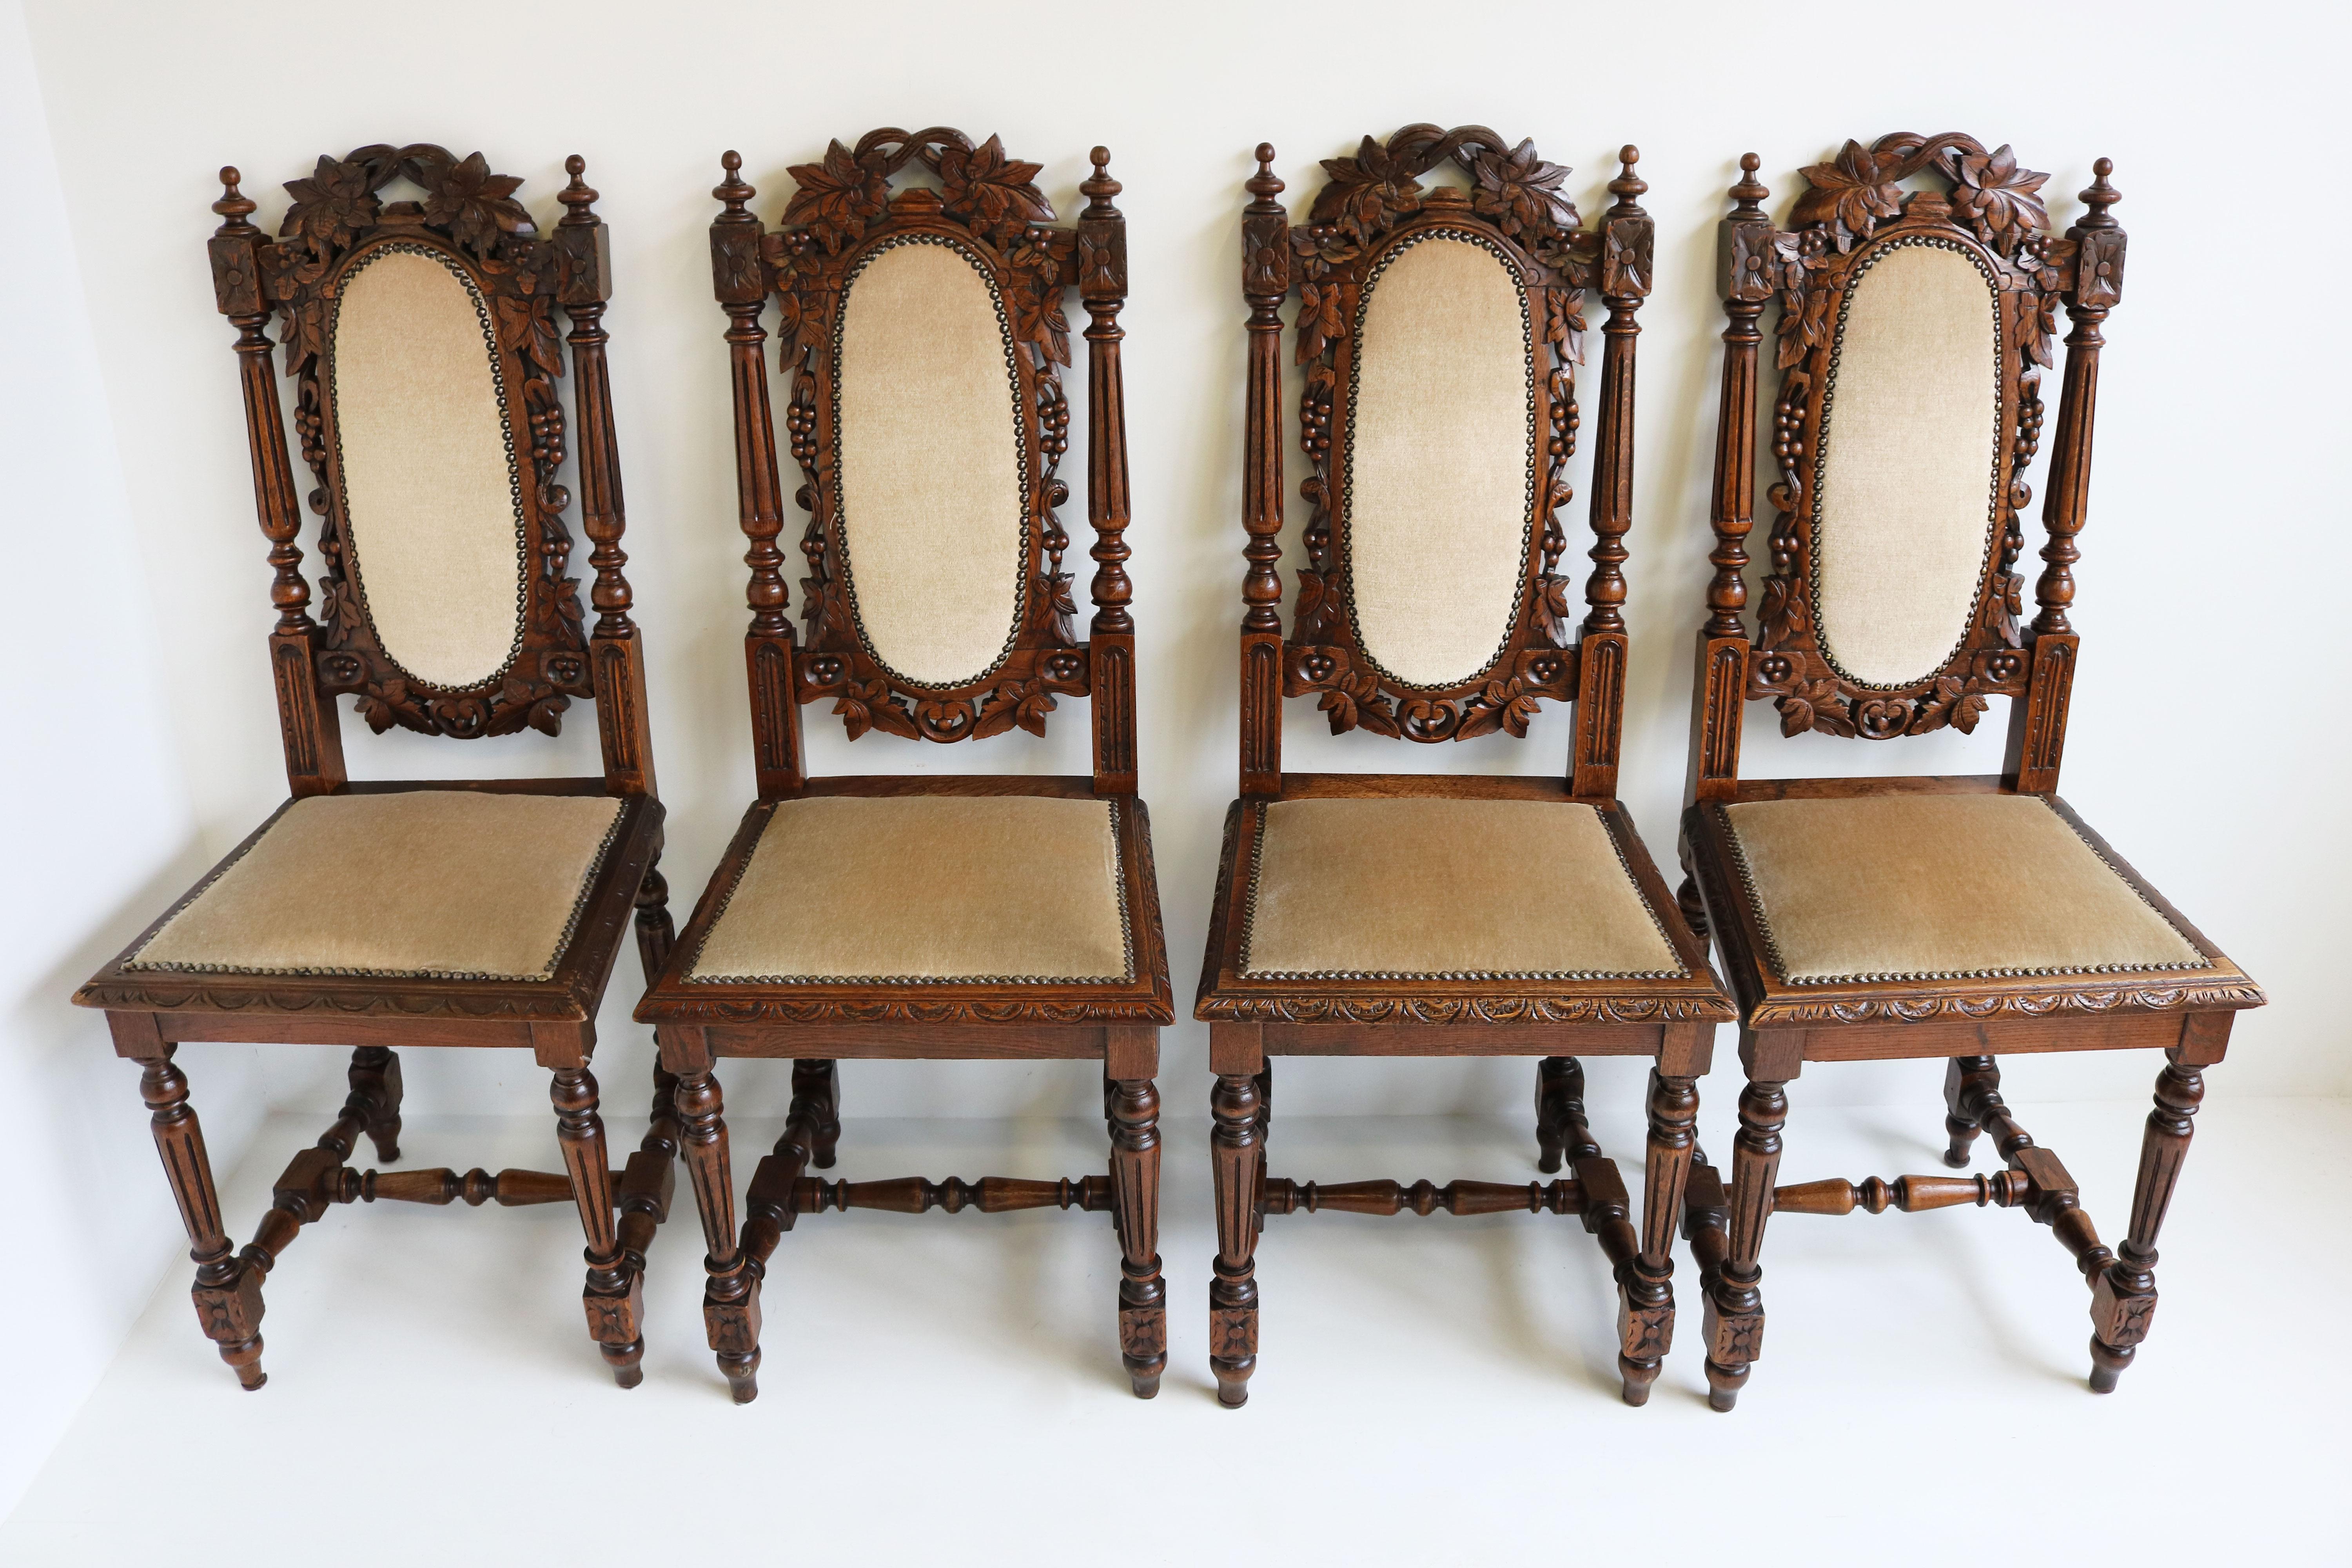 Stilvoller Satz von 4 französischen Renaissance-Revival-Esszimmerstühlen mit beeindruckenden hohen Rückenlehnen aus den 1860er Jahren. 
Vollständig aus massiver Eiche gefertigt und von einem Meisterschnitzer mit viel Liebe zum Detail von Hand